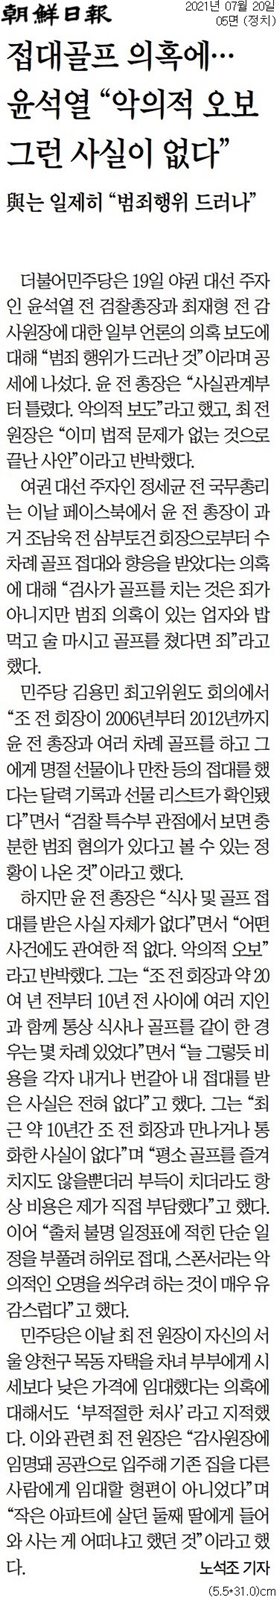 ▲ 20일 조선일보 윤석열 골프접대 관련 기사